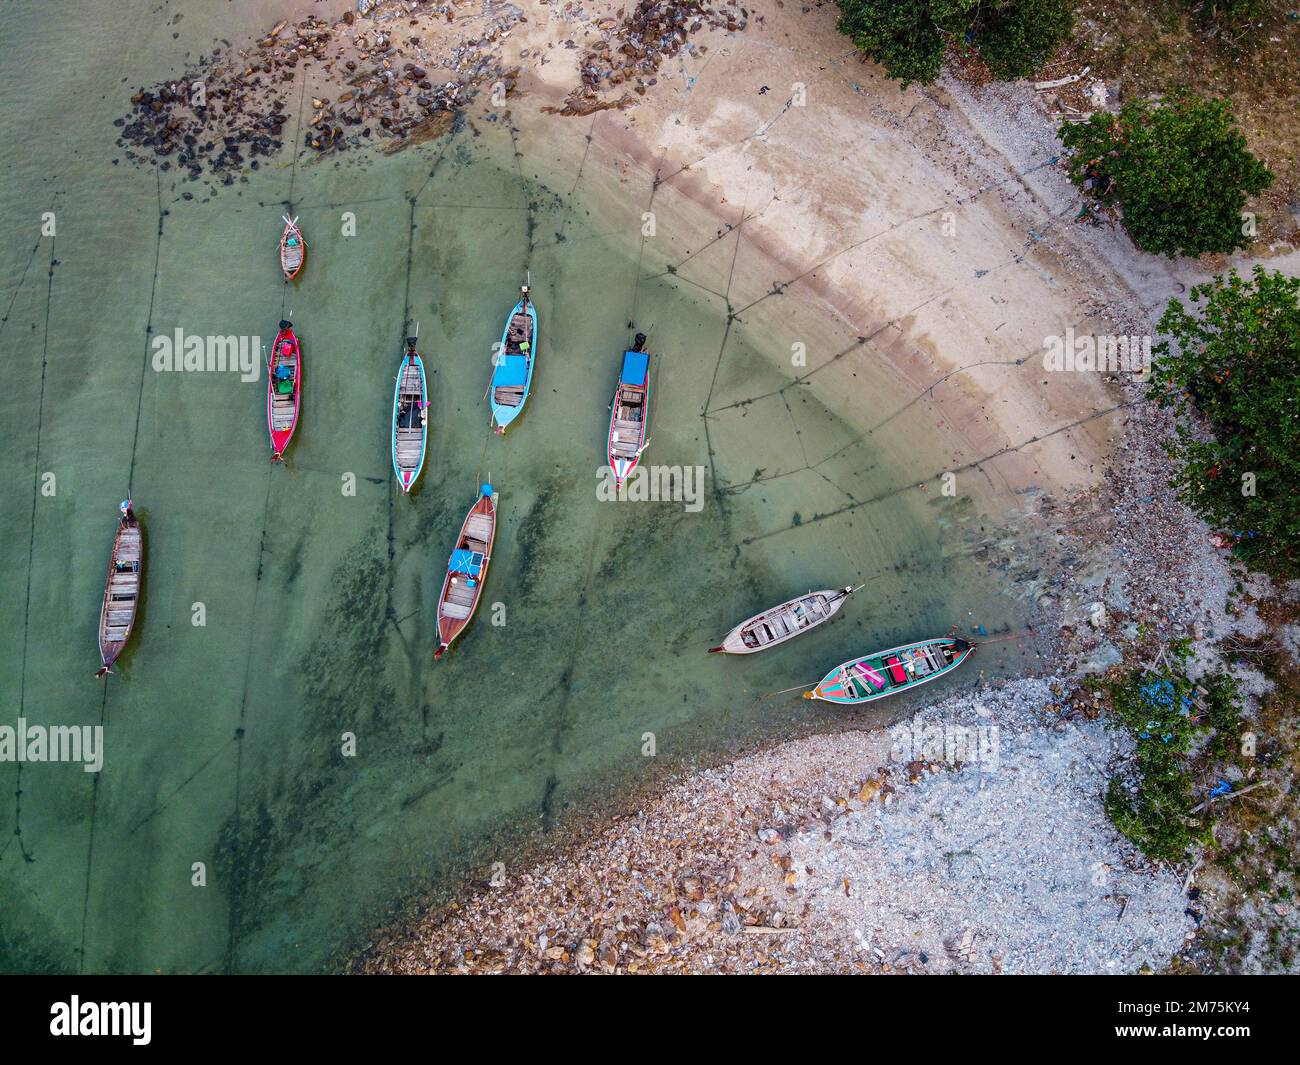 Antenne de petits bateaux de pêche, plage Relax Bay, Koh Lanta, Thaïlande, Ko Lanta, Krabi, Thaïlande Banque D'Images